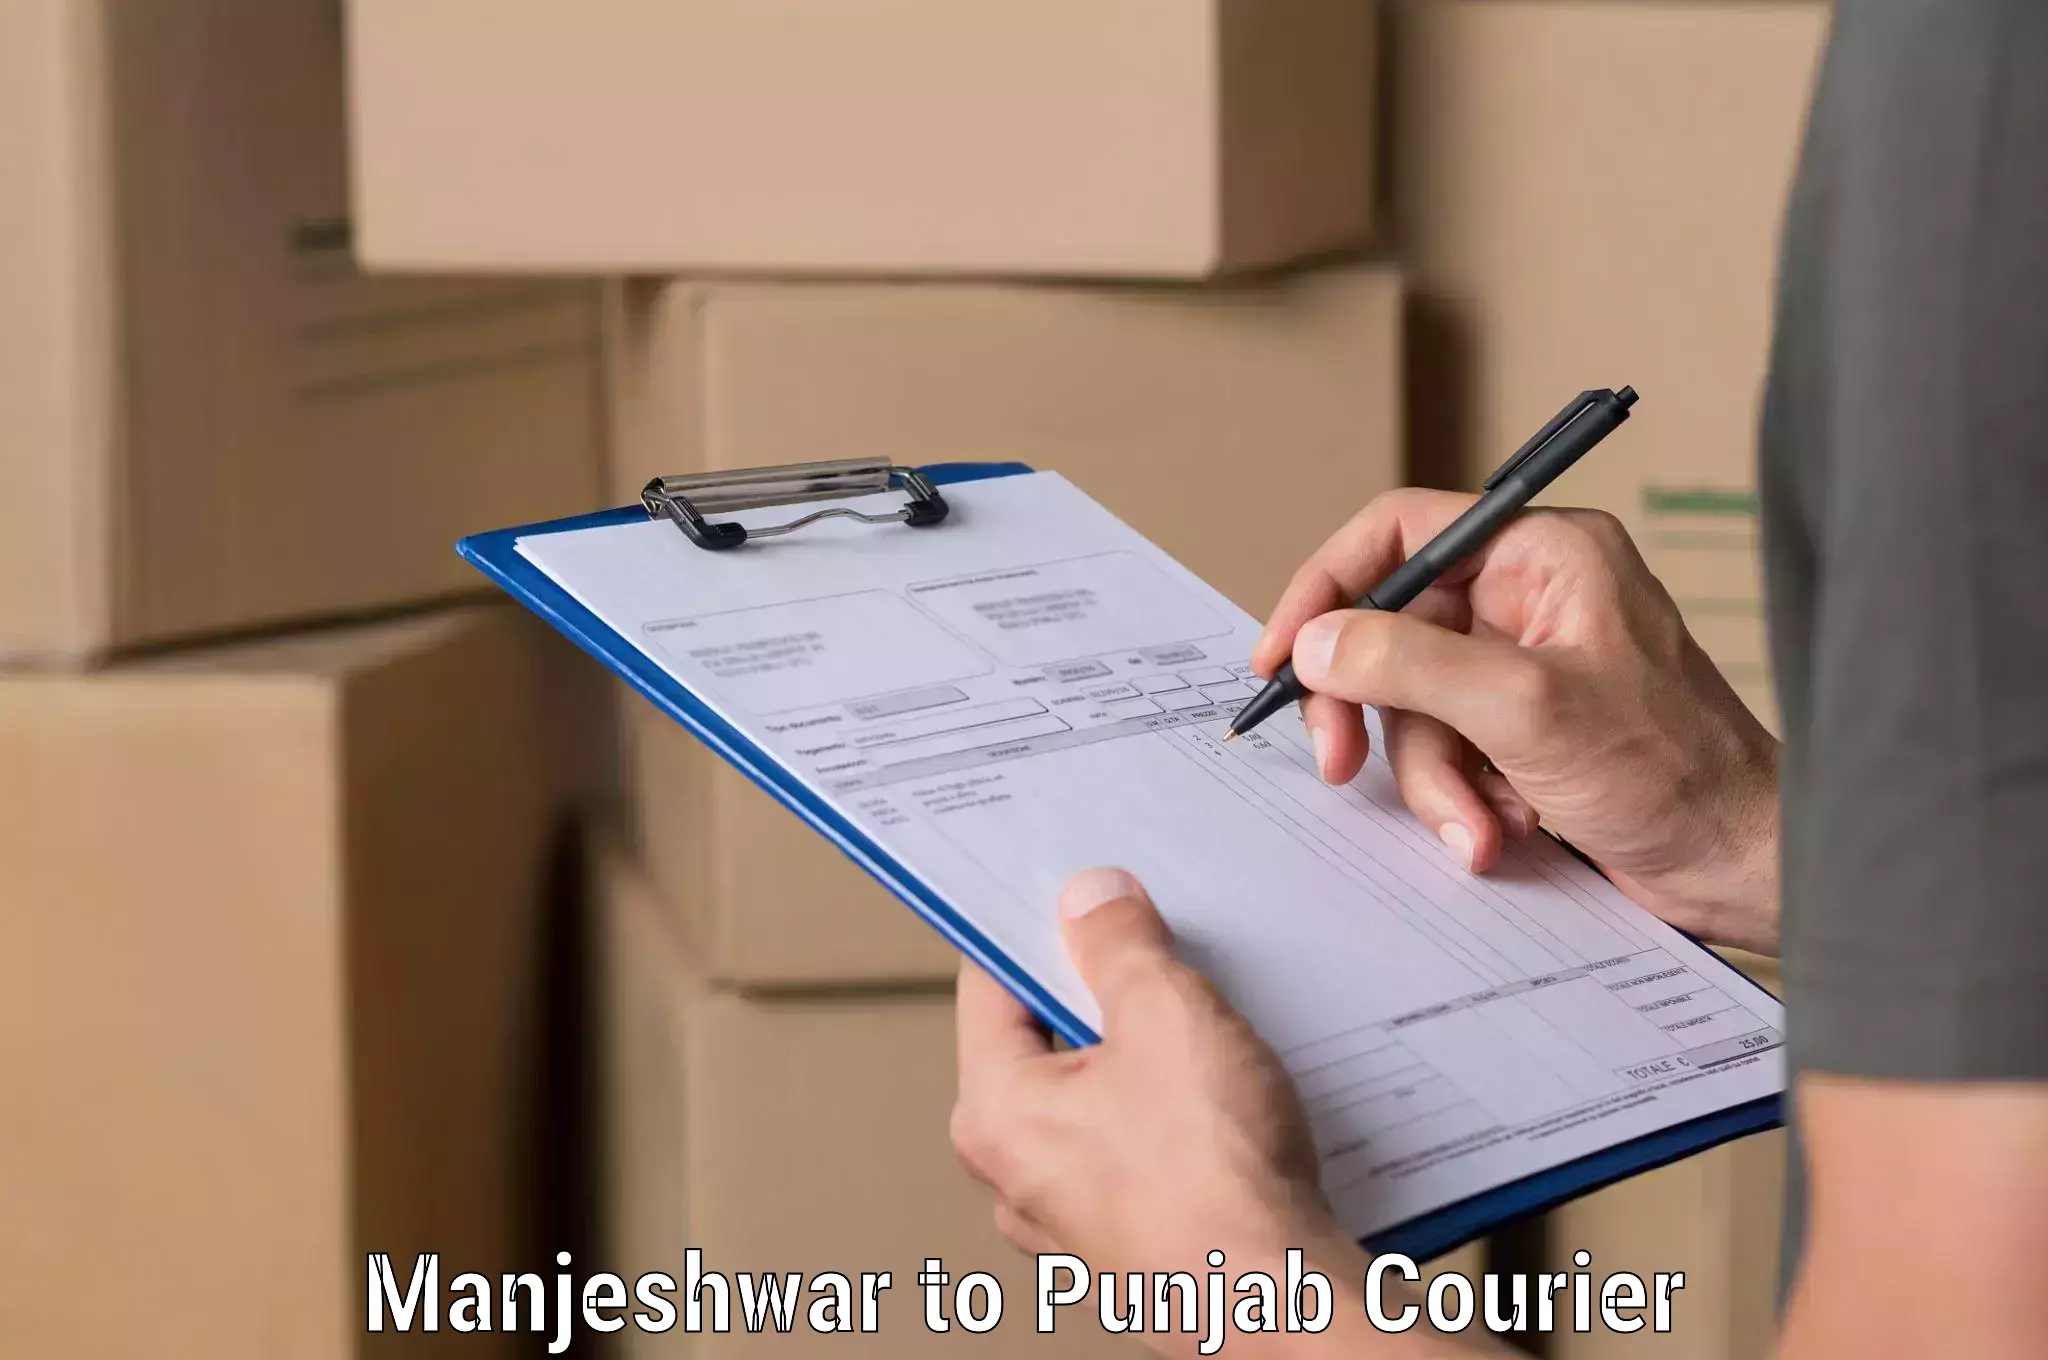 Professional courier handling in Manjeshwar to Punjab